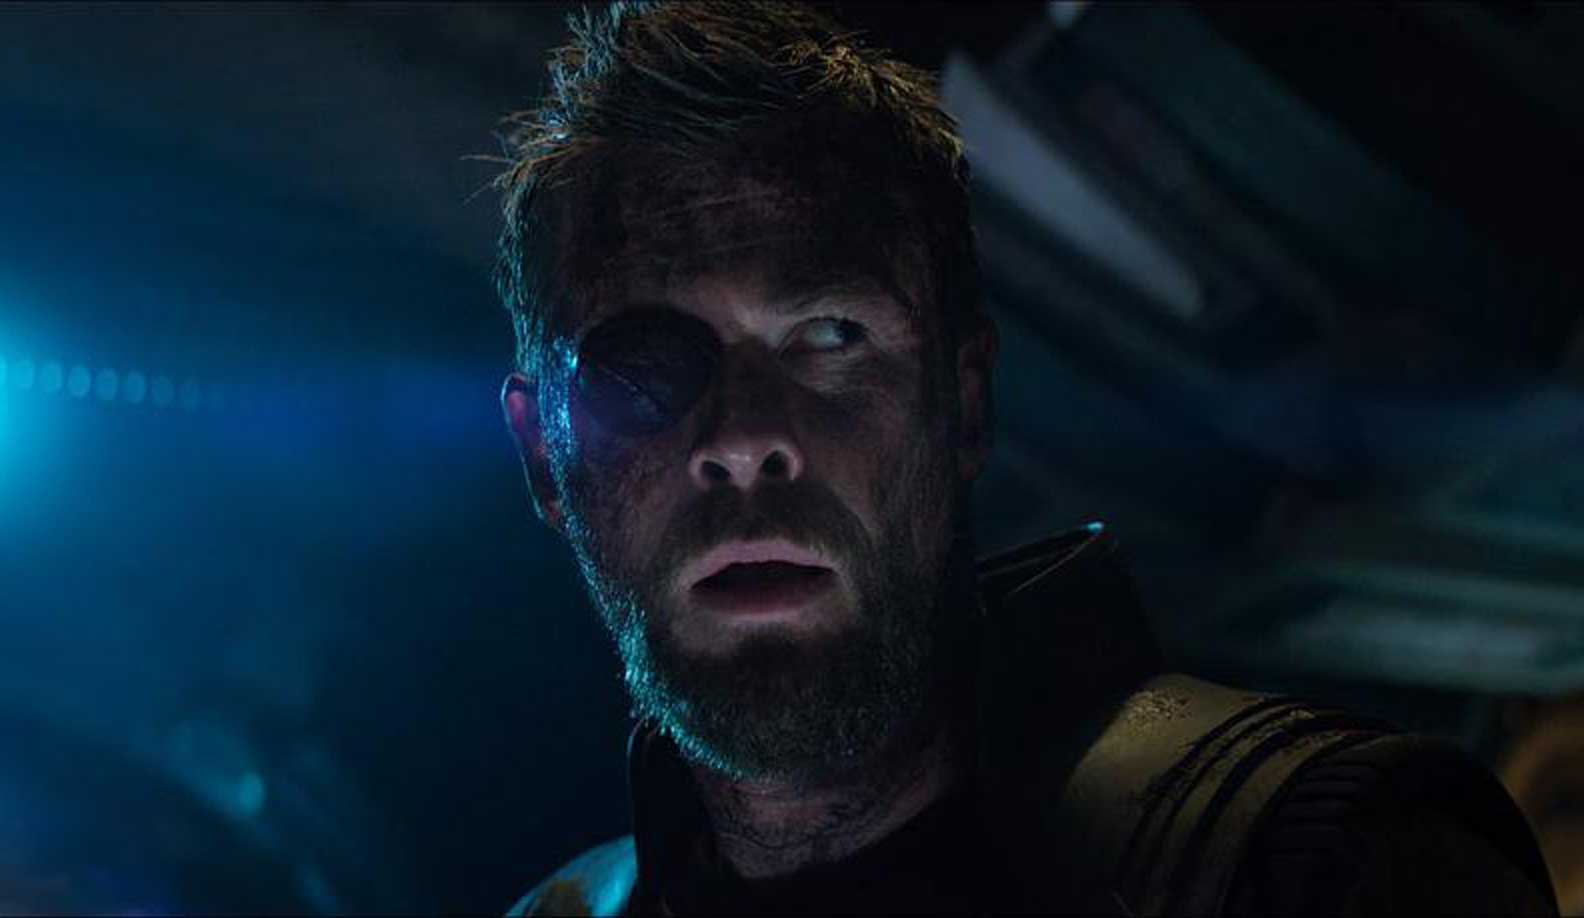 Chris Hemsworth Avengers: Endgame